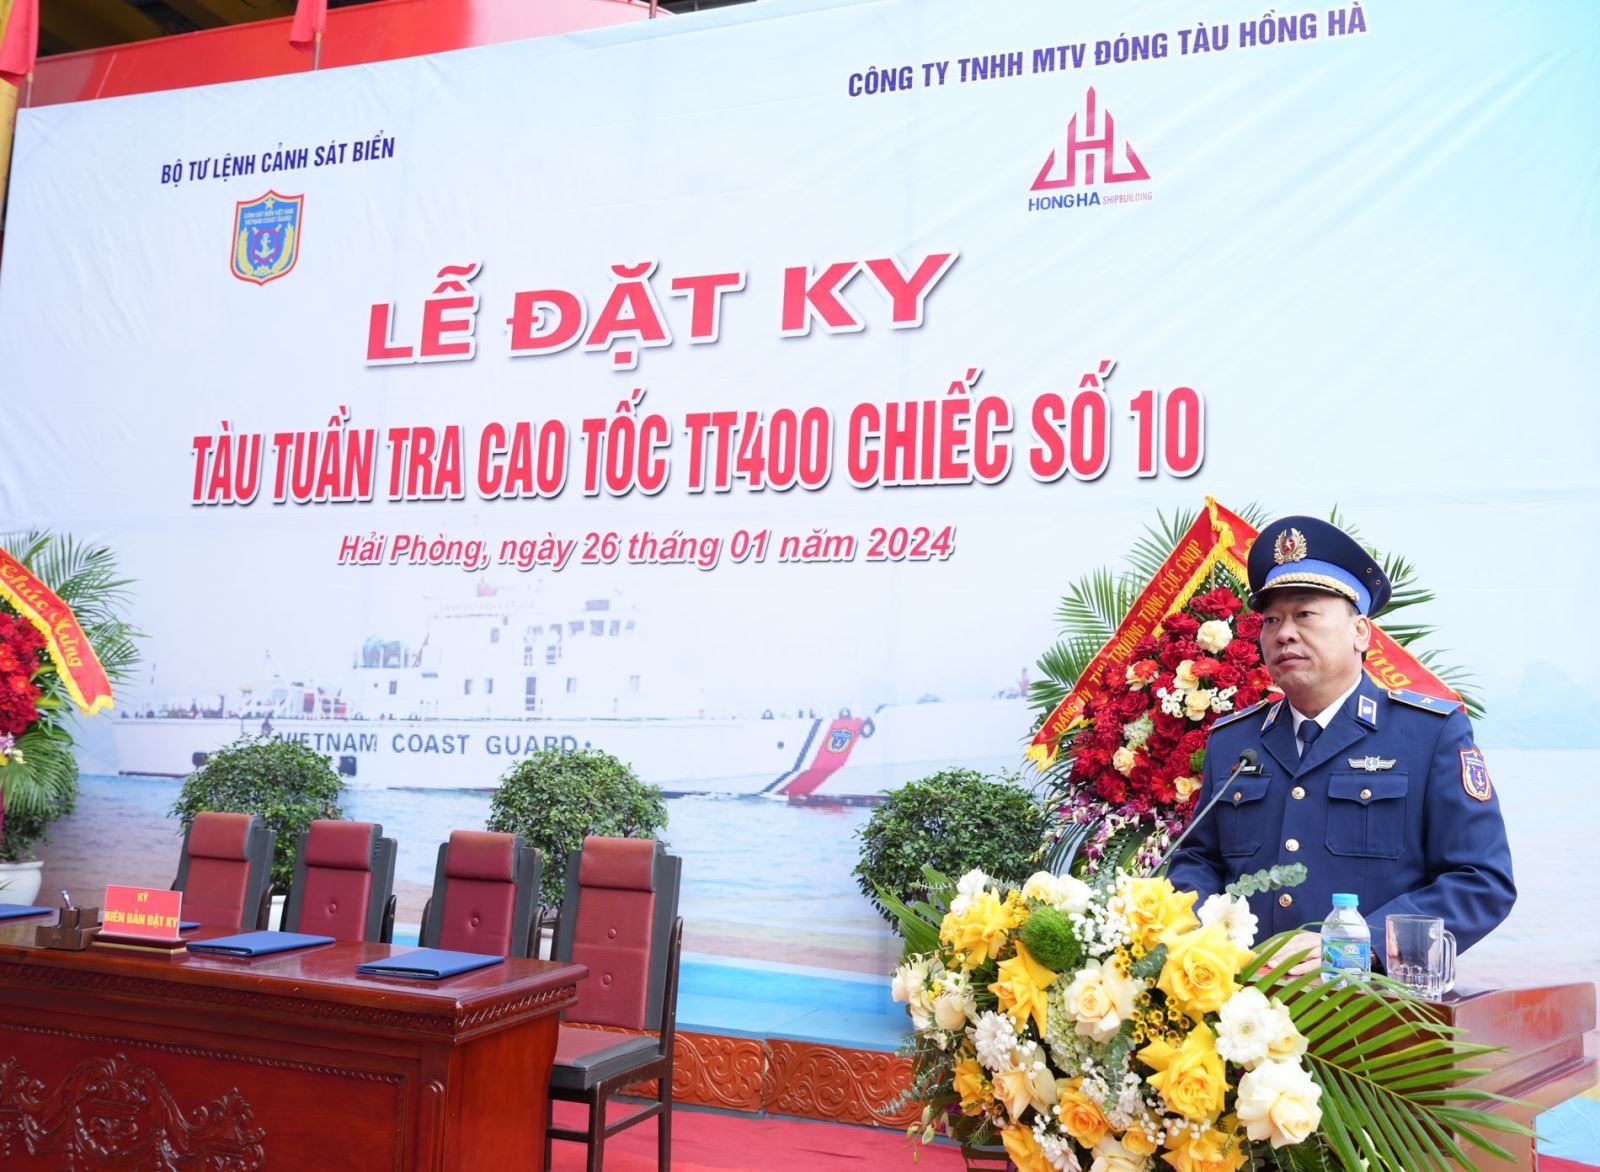 Thiếu tướng Lê Quang Đạo - Tư lệnh Cảnh sát biển Việt Nam phát biểu tại Lễ đặt ky. Ảnh: canhsatbien.vn